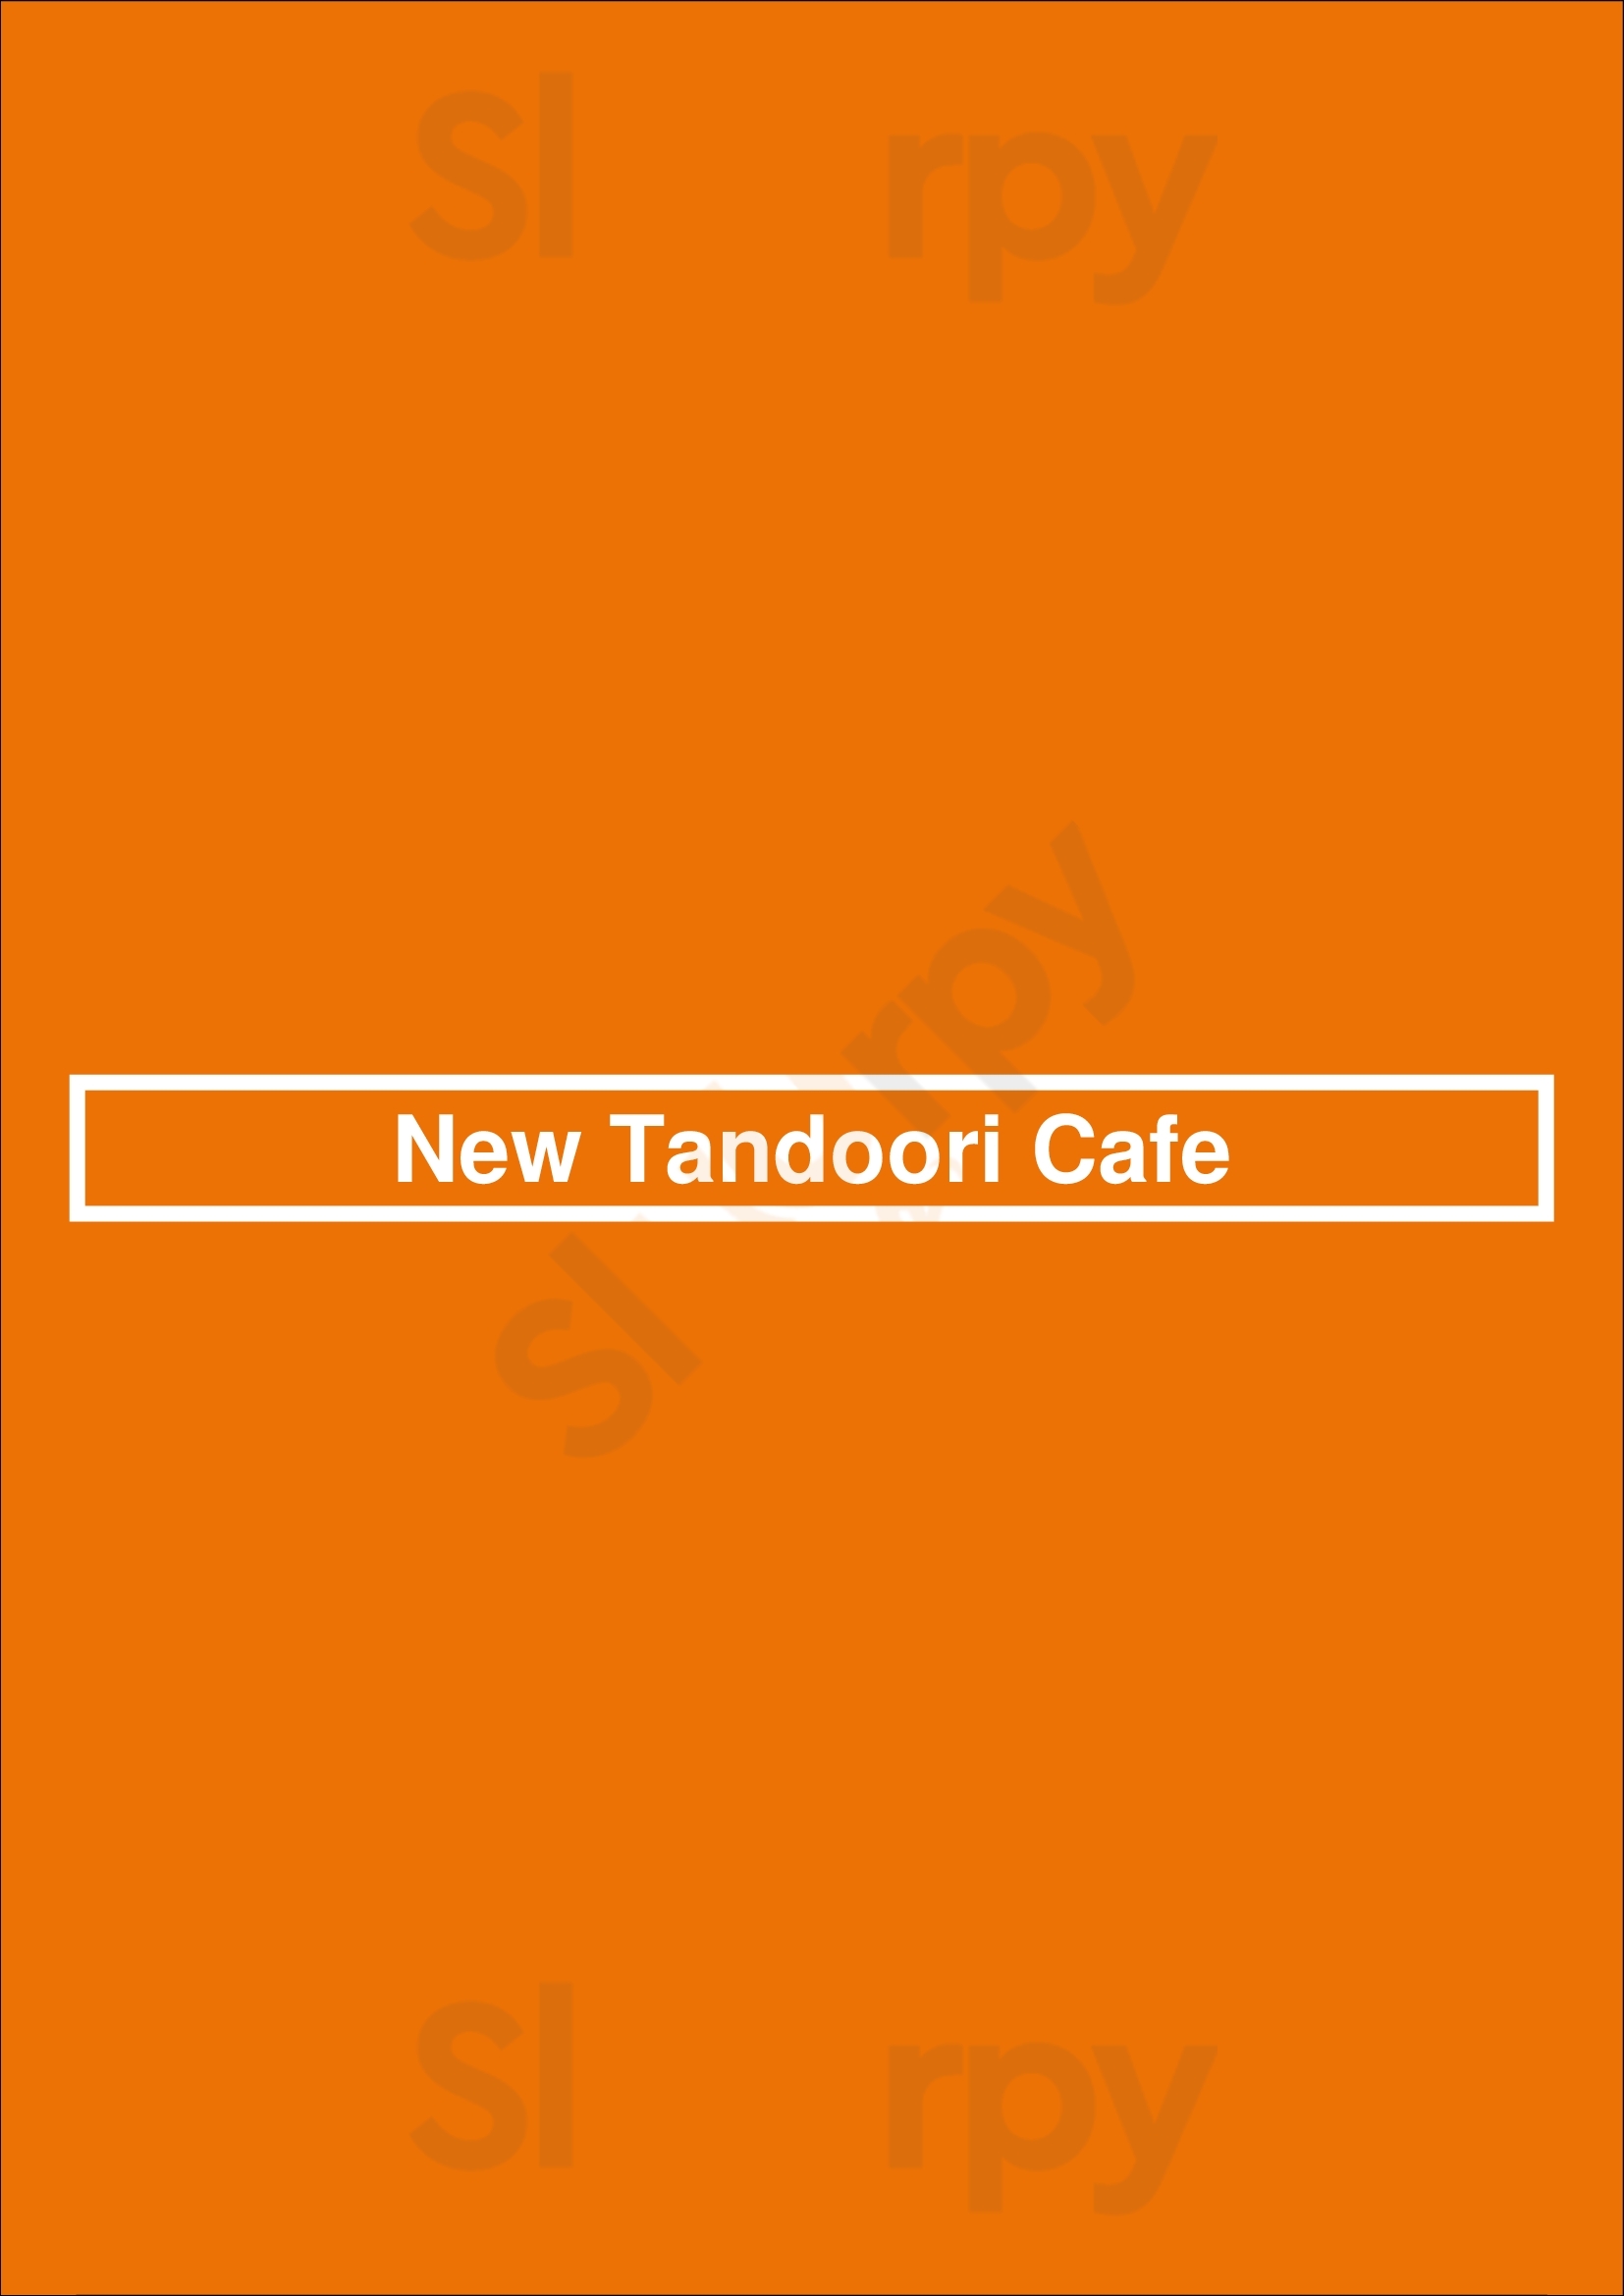 New Tandoori Cafe San Jose Menu - 1